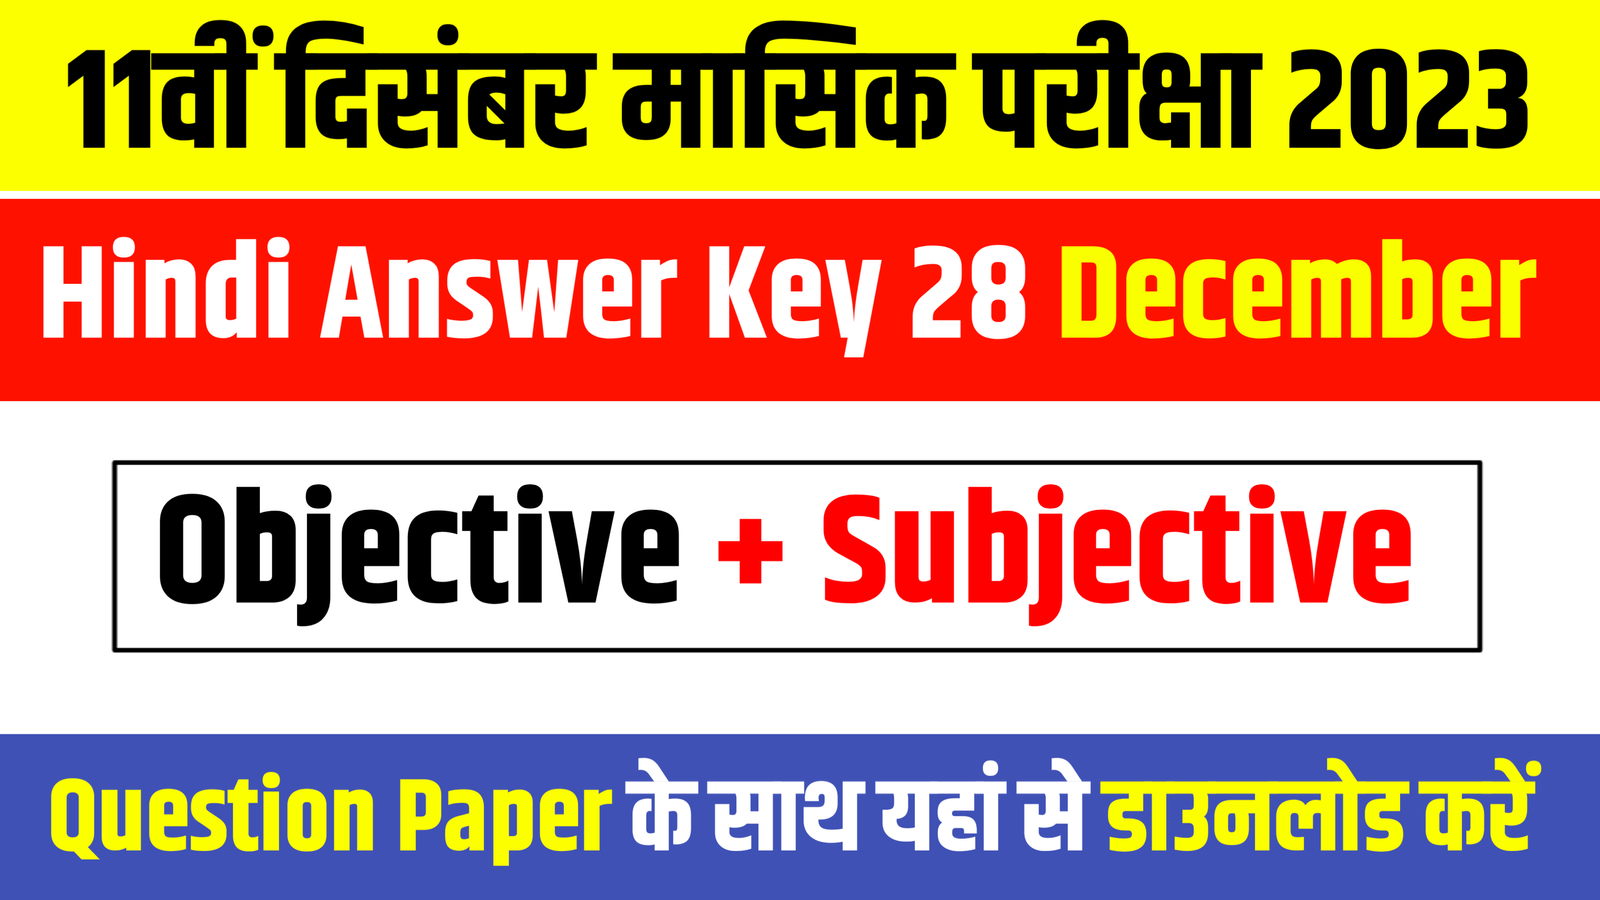 Bihar Board 11th Hindi Answer Key 2023: